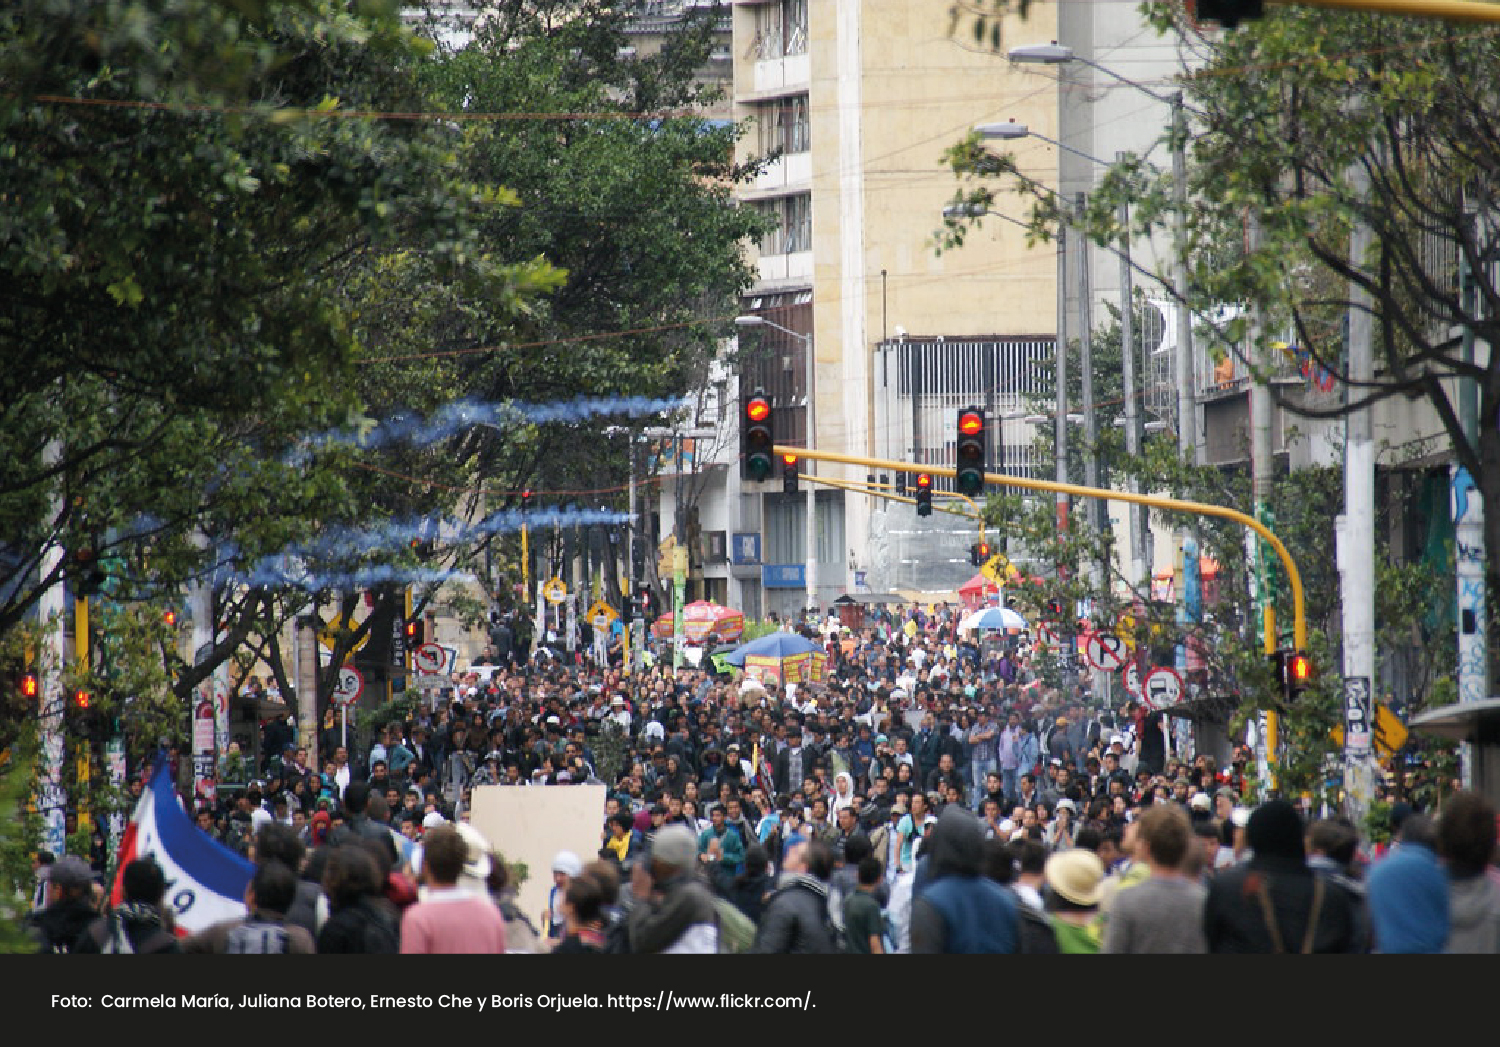 Foto de manifestaciones en Bogotá. Gobernanza democrática en ciudades latinoamericanas. - Cider | Uniandes